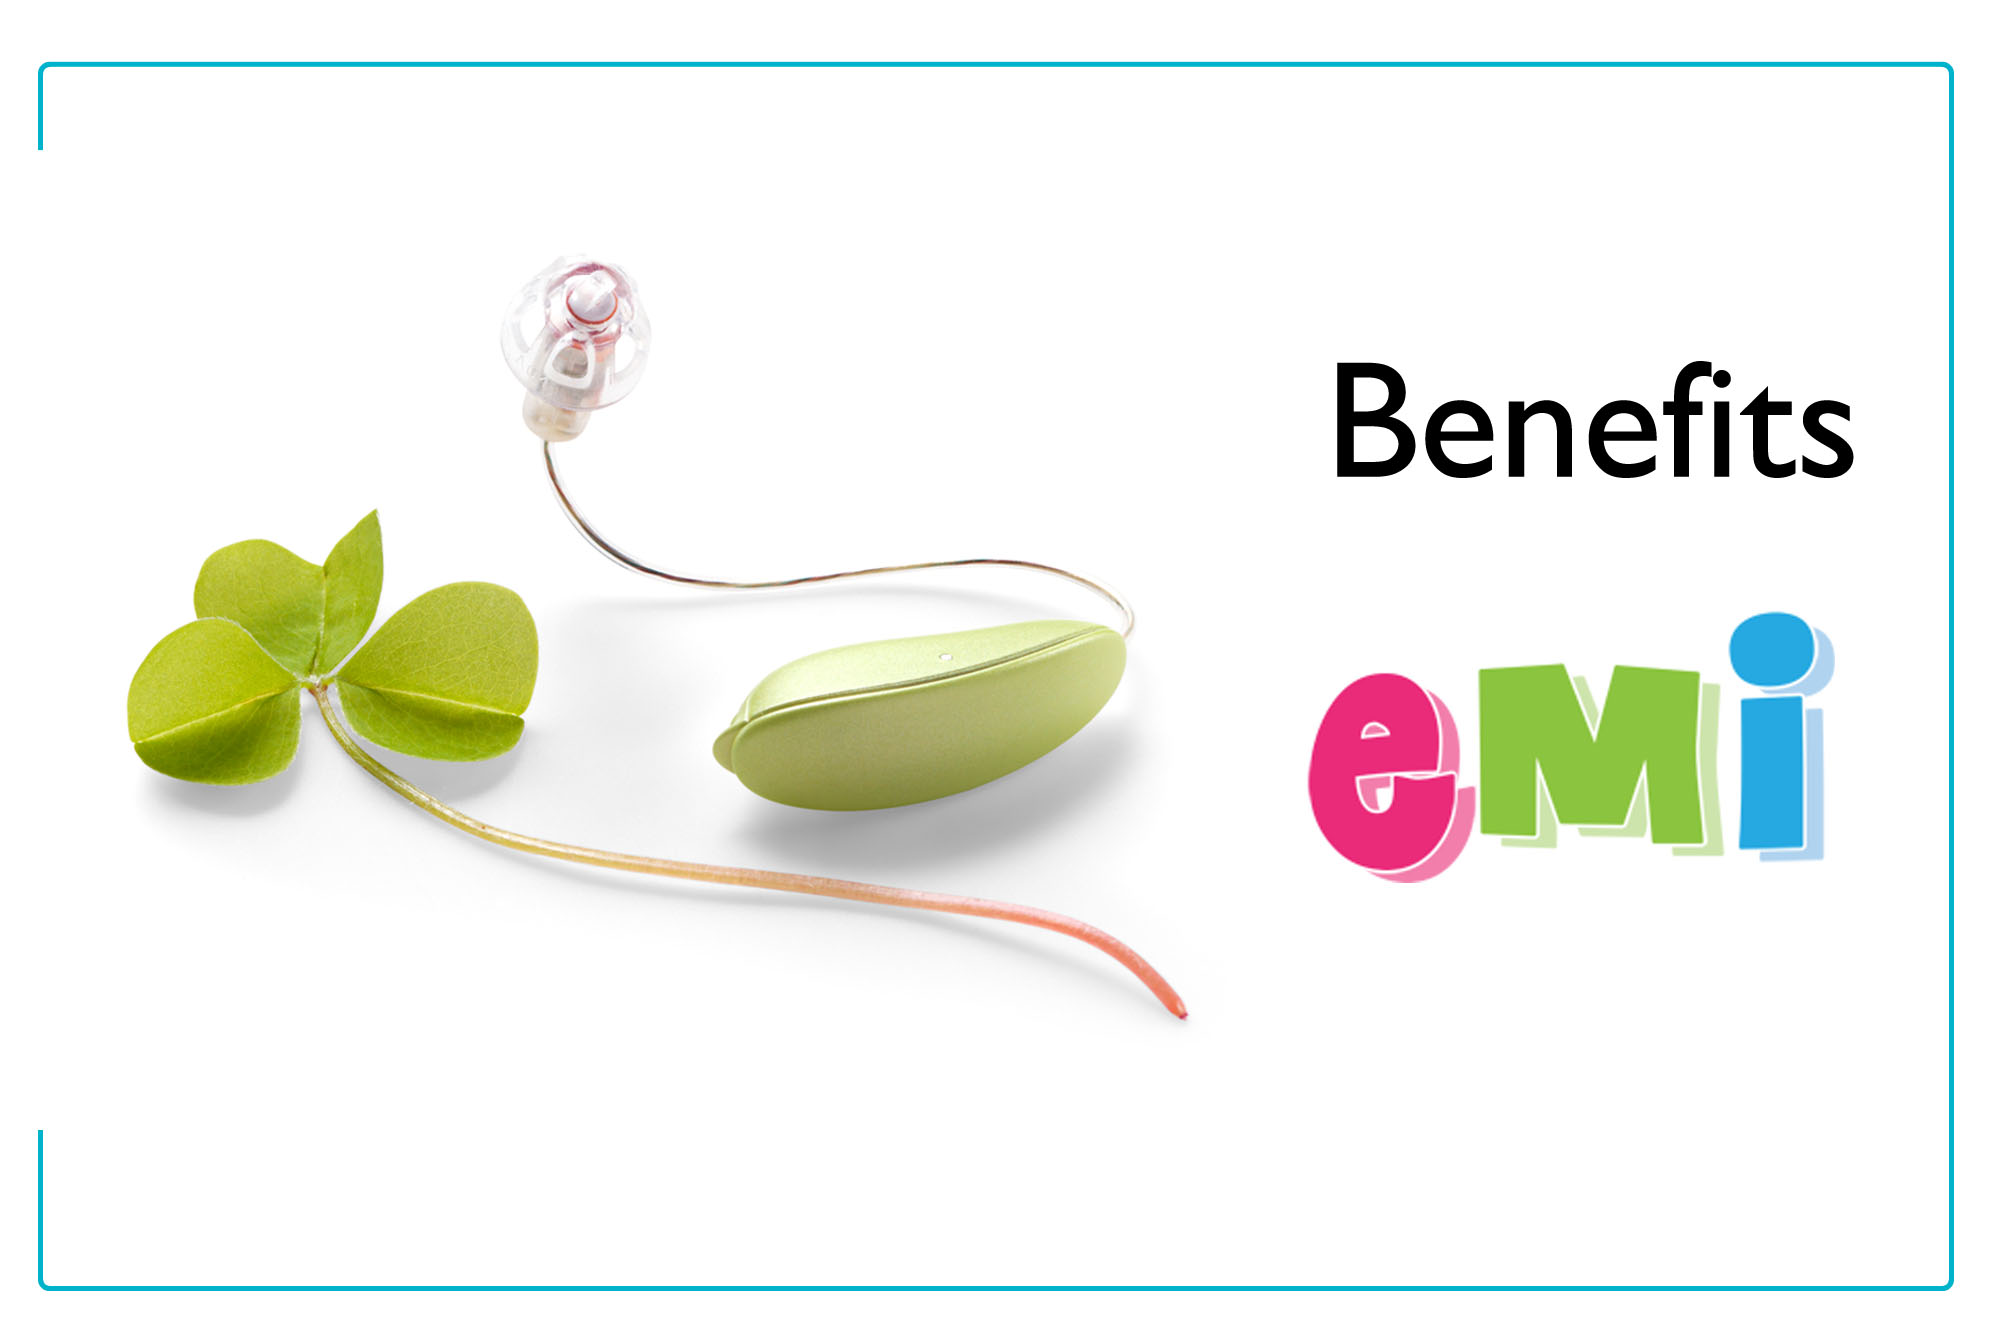 Benefits of EMI